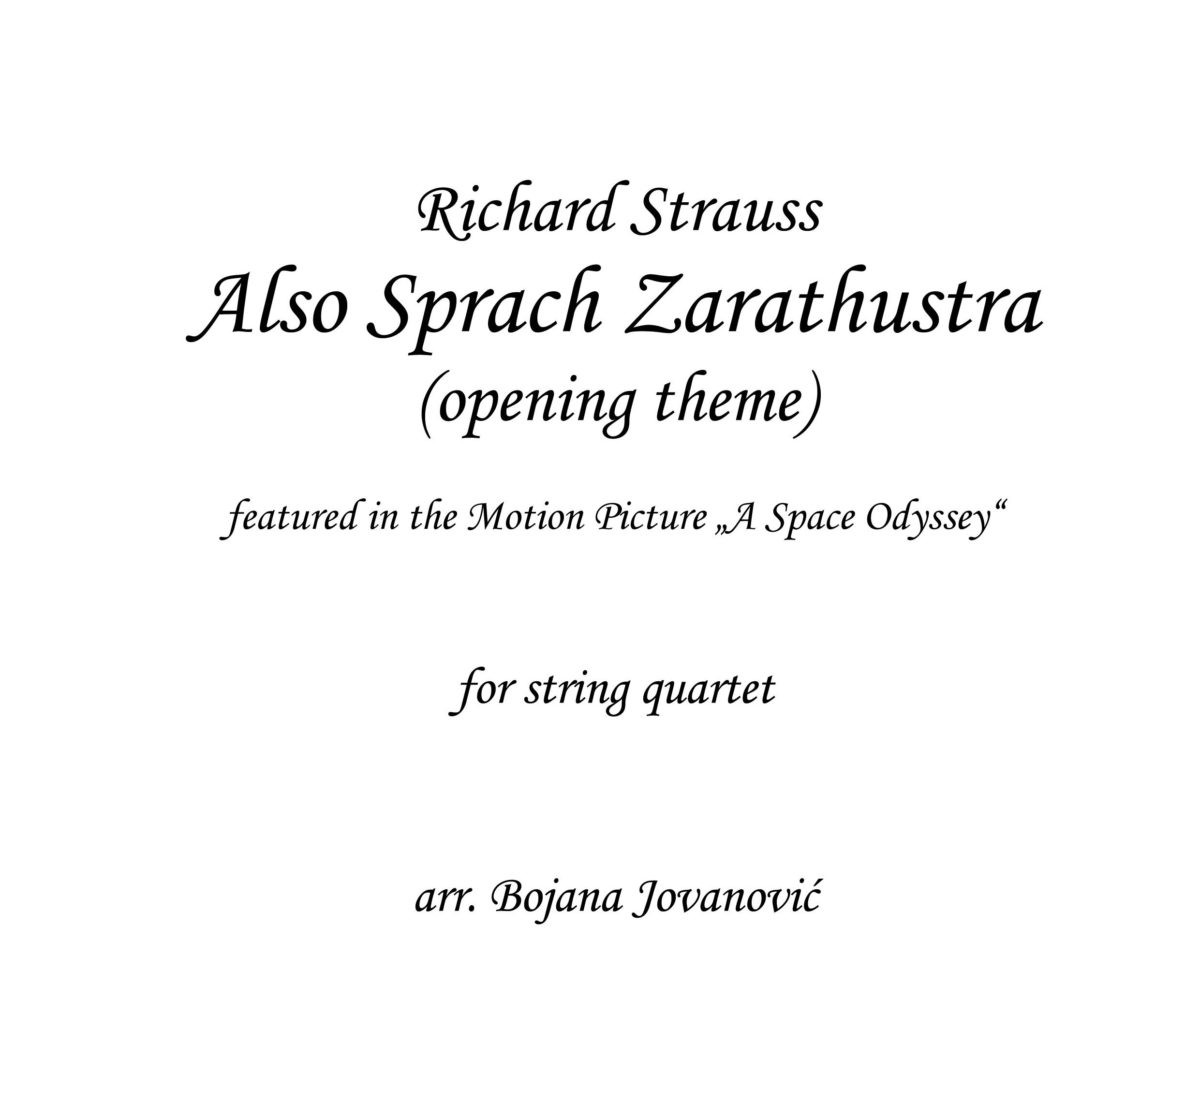 Also Sprach Zarathustra (R.Strauss) - Sheet Music